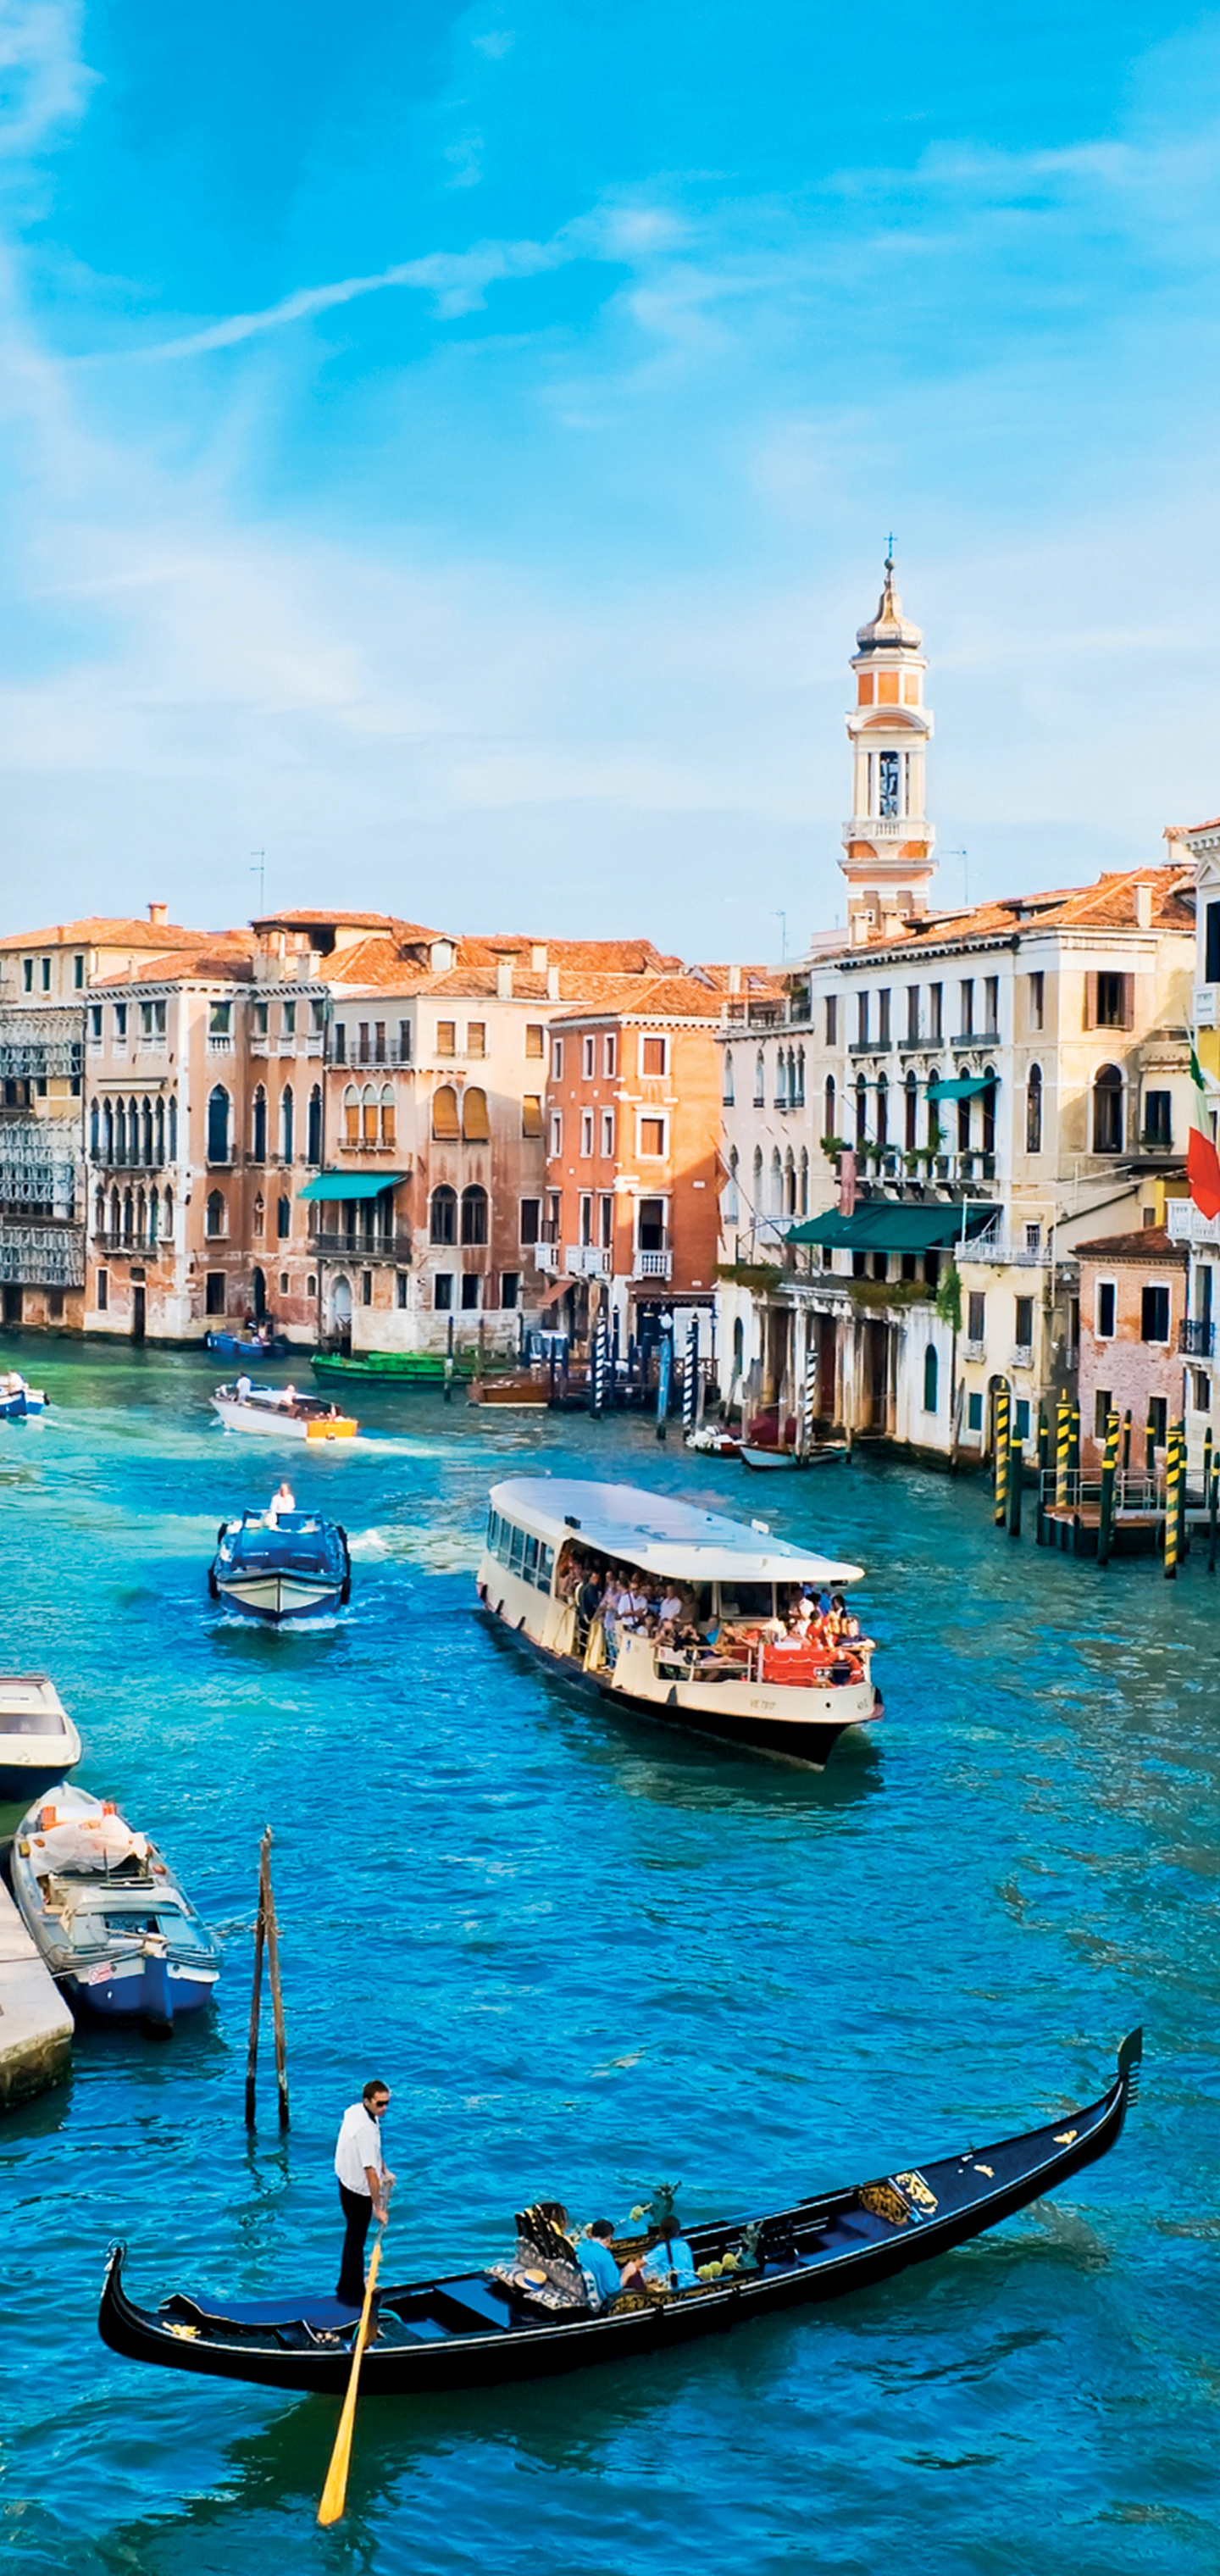 Скачать обои бесплатно Города, Италия, Венеция, Город, Канал, Гондола, Сделано Человеком картинка на рабочий стол ПК